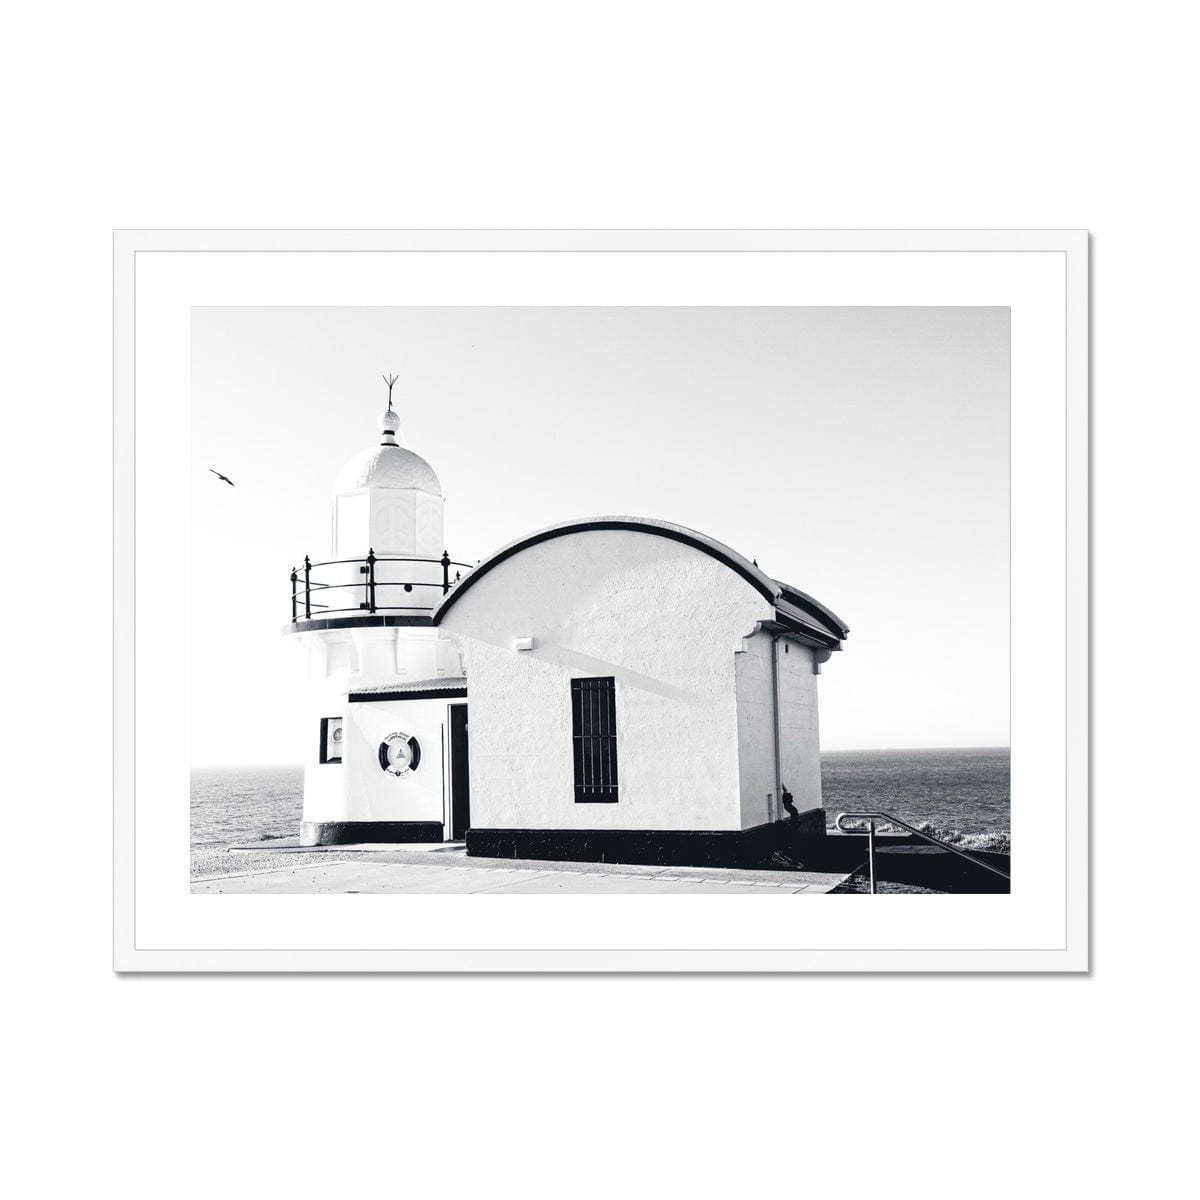 Adam Davies Framed 24"x18" (60.96x45.72cm) / White Frame Tacking Point Lighthouse V3 Framed & Mounted Print